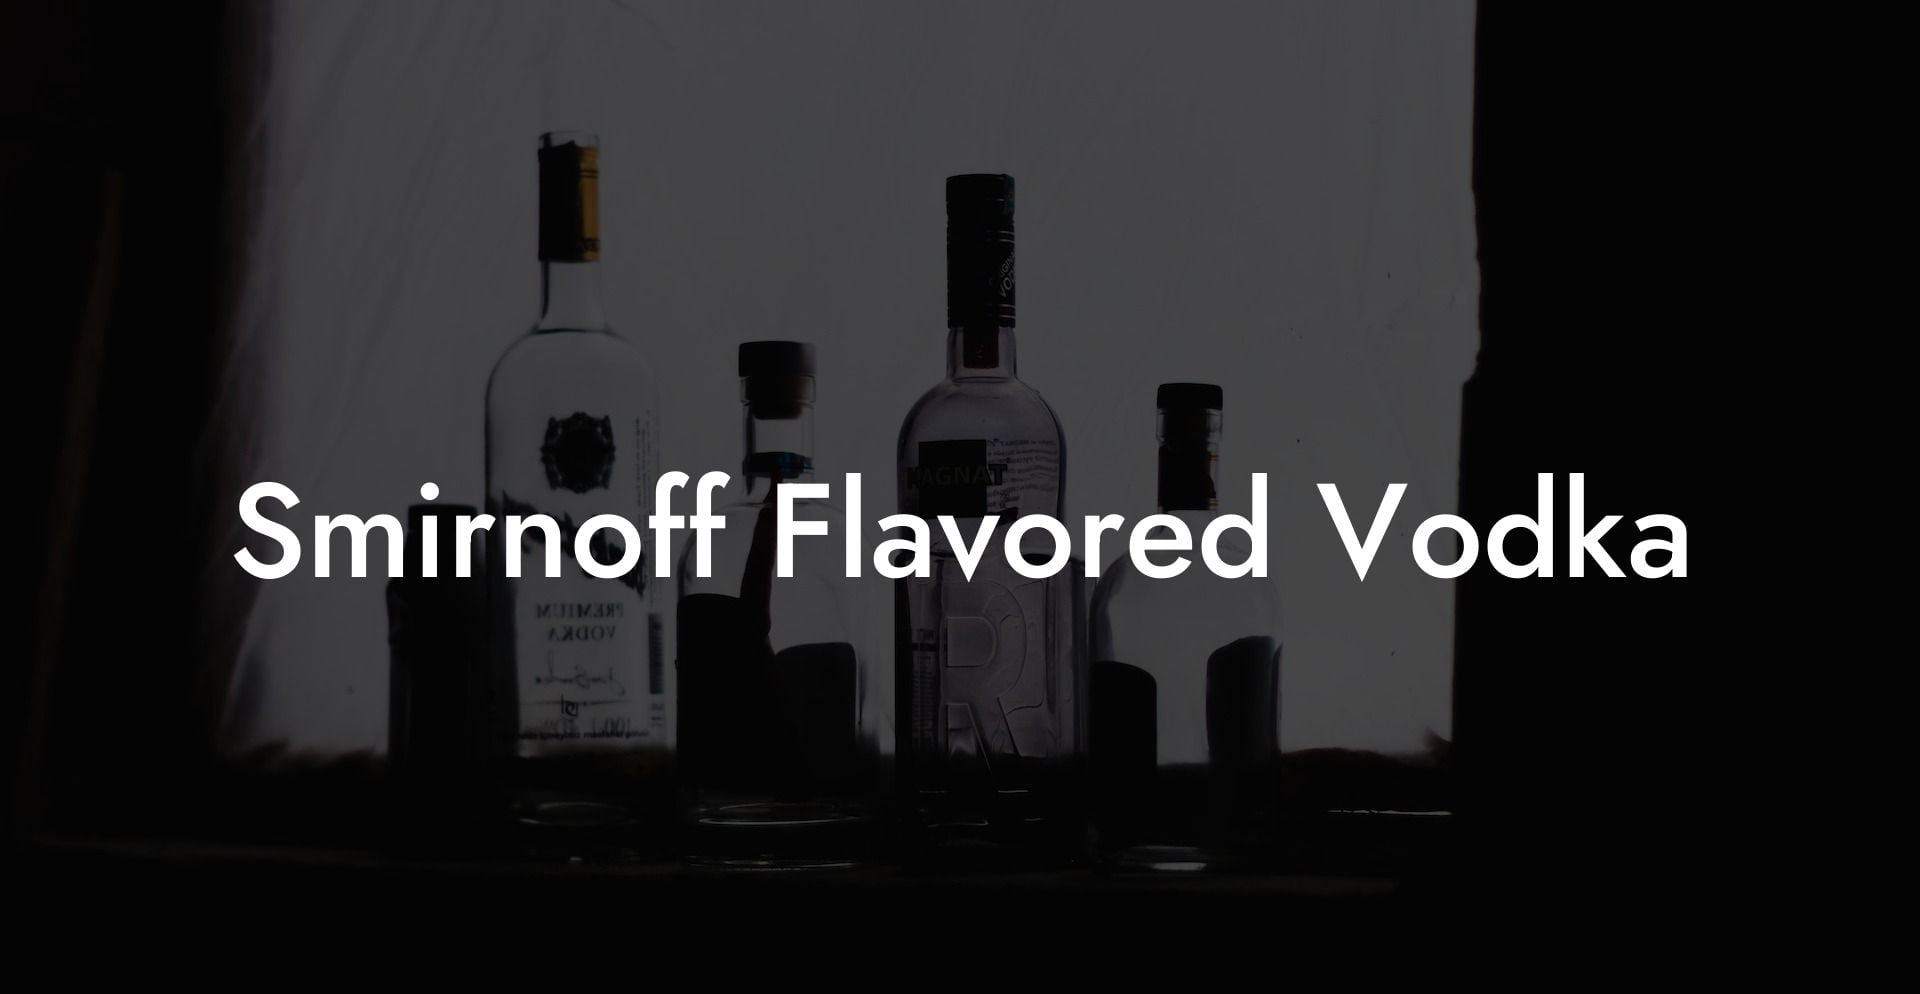 Smirnoff Flavored Vodka